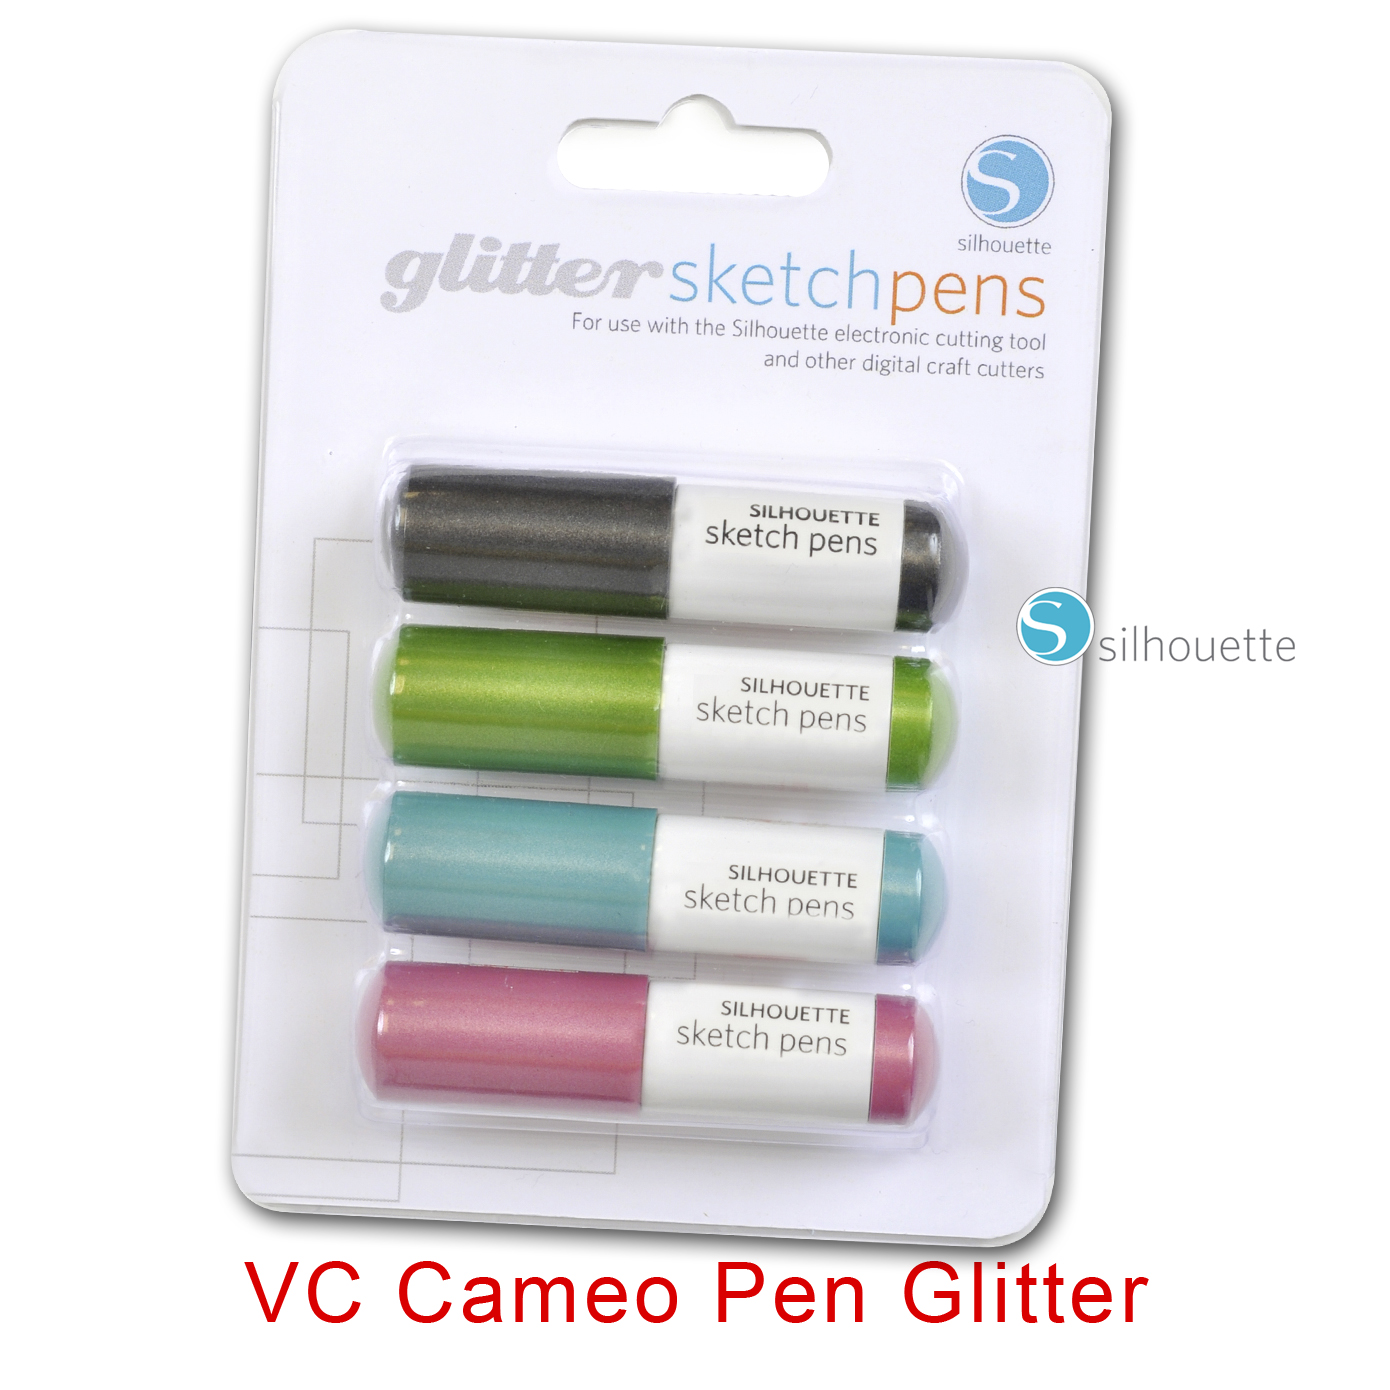 VC Cameo Pen Glitter